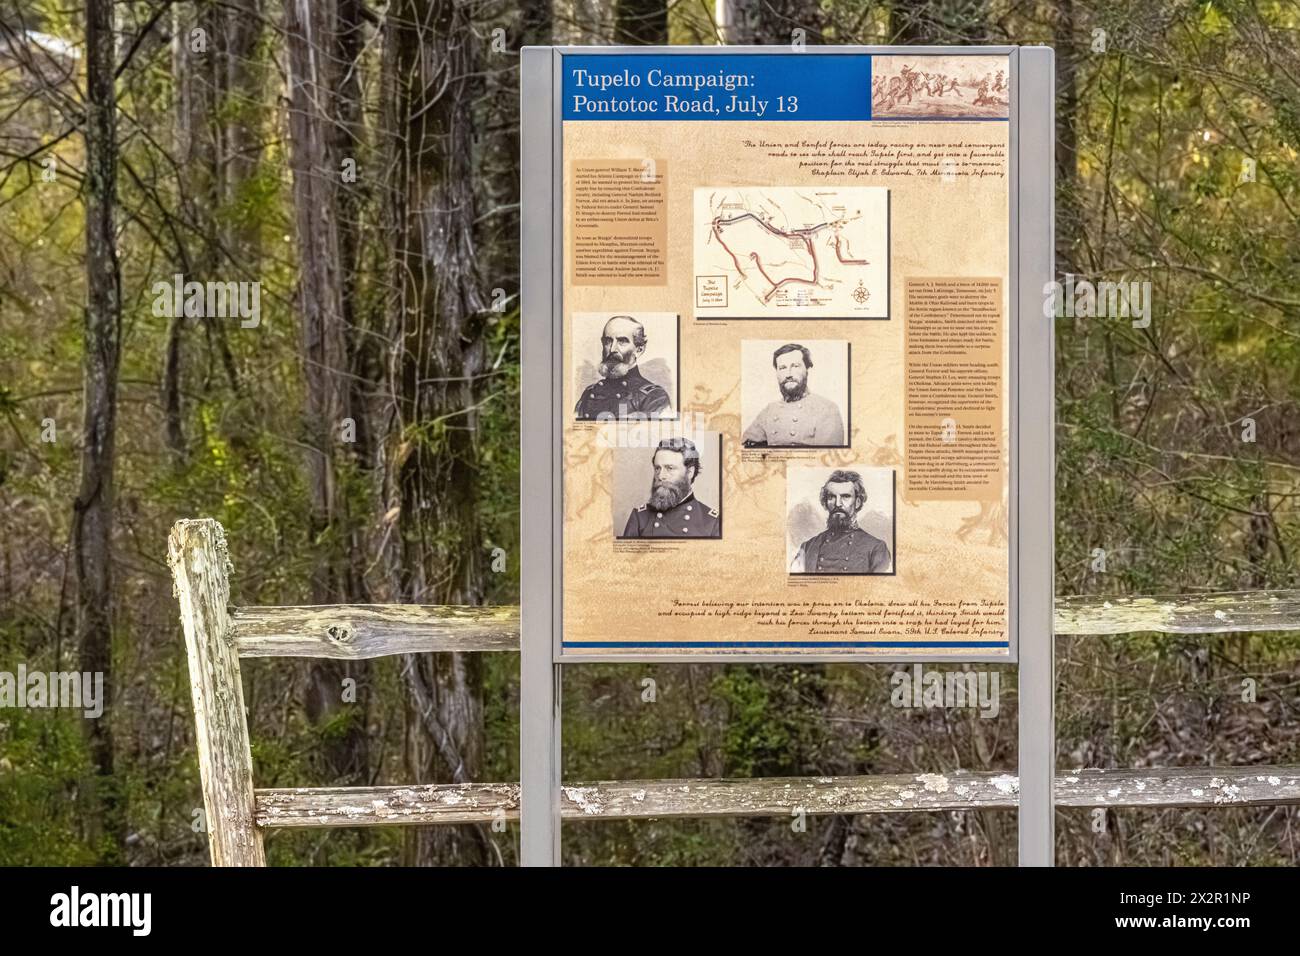 Insegna storica per la battaglia della guerra civile americana durante la campagna di Tupelo a Potontac Road il 13 luglio 1864. (USA) Foto Stock